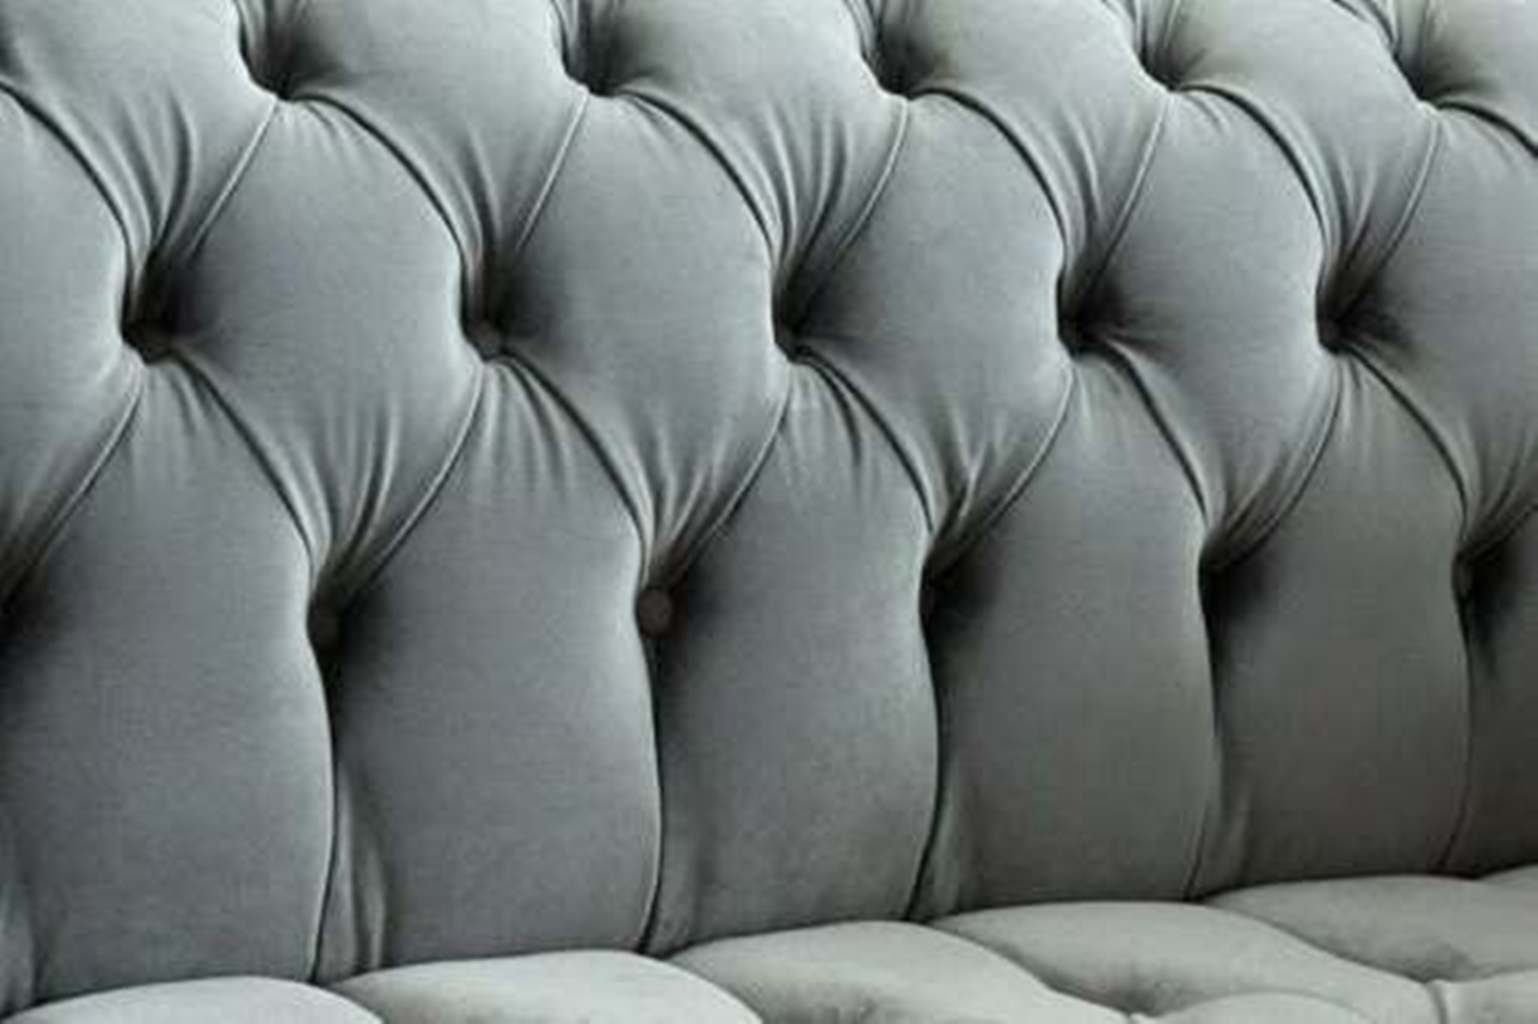 Big JVmoebel Couch Textil Chesterfield Wohnzimmer Design Chesterfield-Sofa,